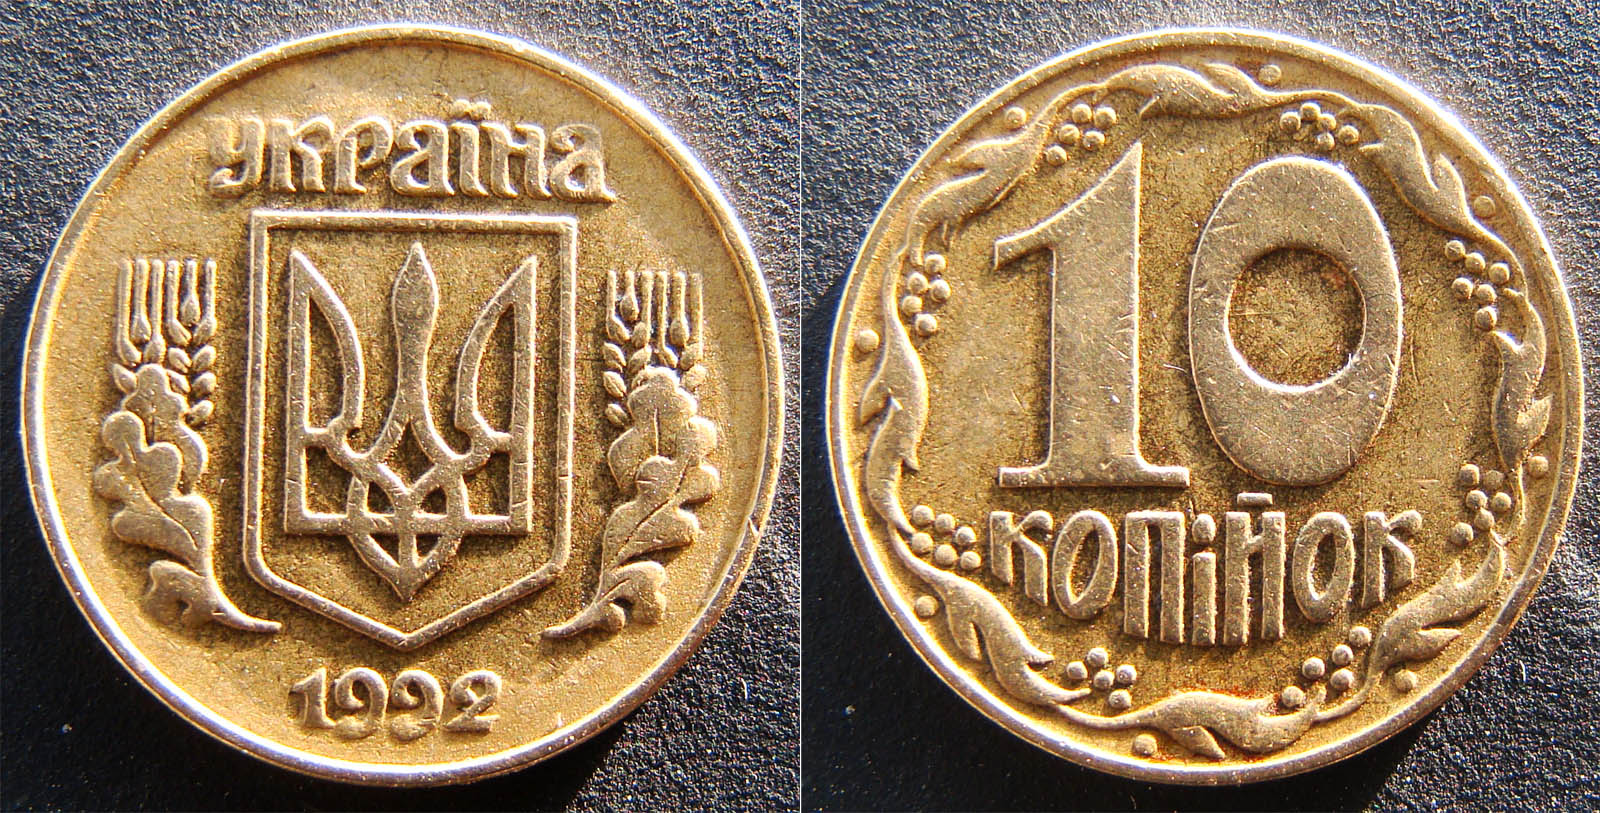 10 копеек 1992г. Примерная стоимость 1600-3500грн. - Дорогие монеты Украины